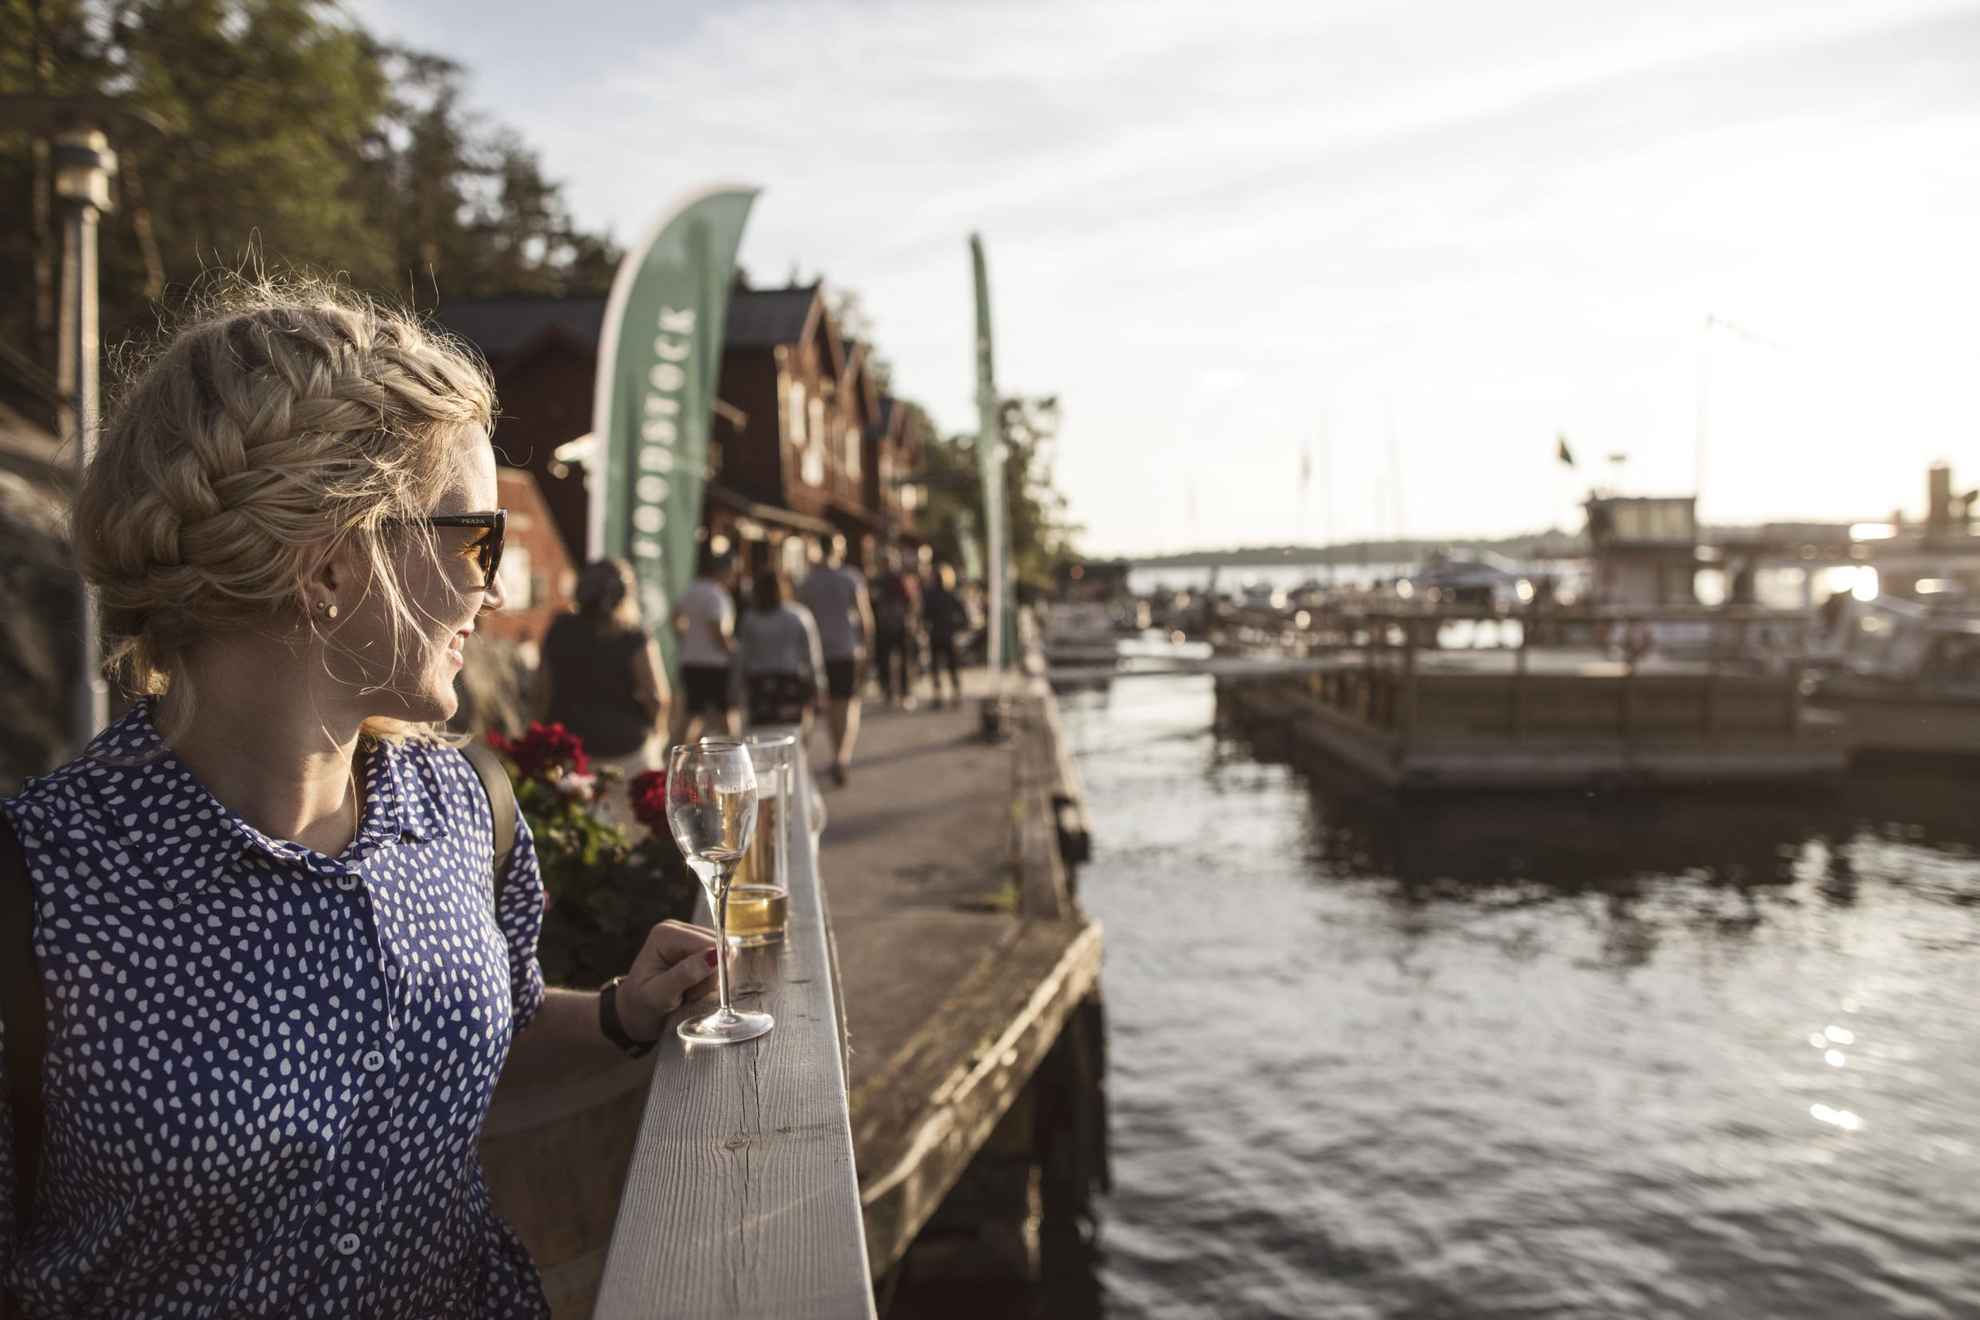 Eine Frau genießt einen Drink in der Sonne auf einem Steg am Meer. Unscharf im Hintergrund der Jachthafen und die Leute, die dort herumlaufen.